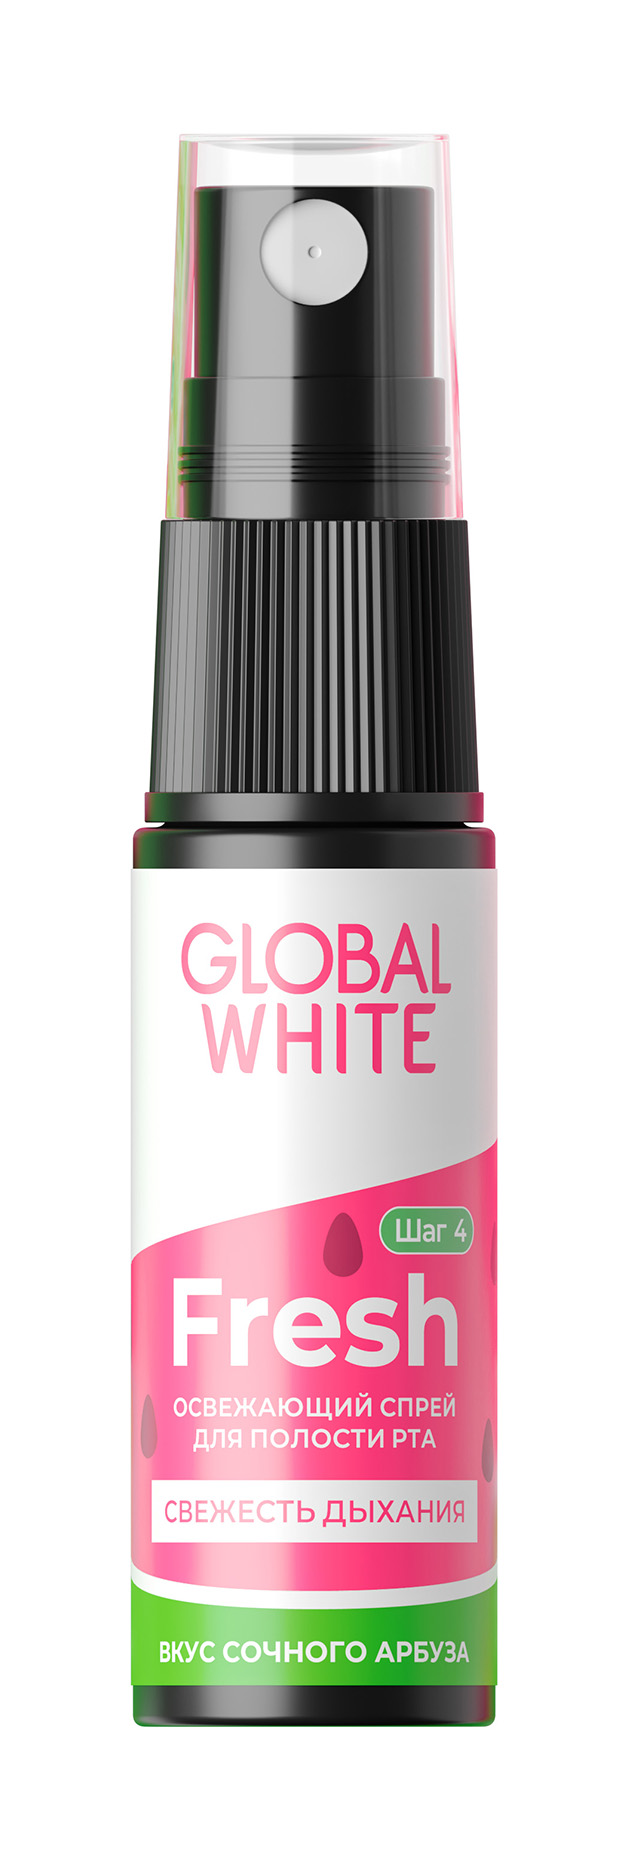 global white освежающий спрей для полости рта fresh со вкусом арбуза 15 мл Спрей для полости рта Global White Fresh освежающий, со вкусом арбуза, 15 мл